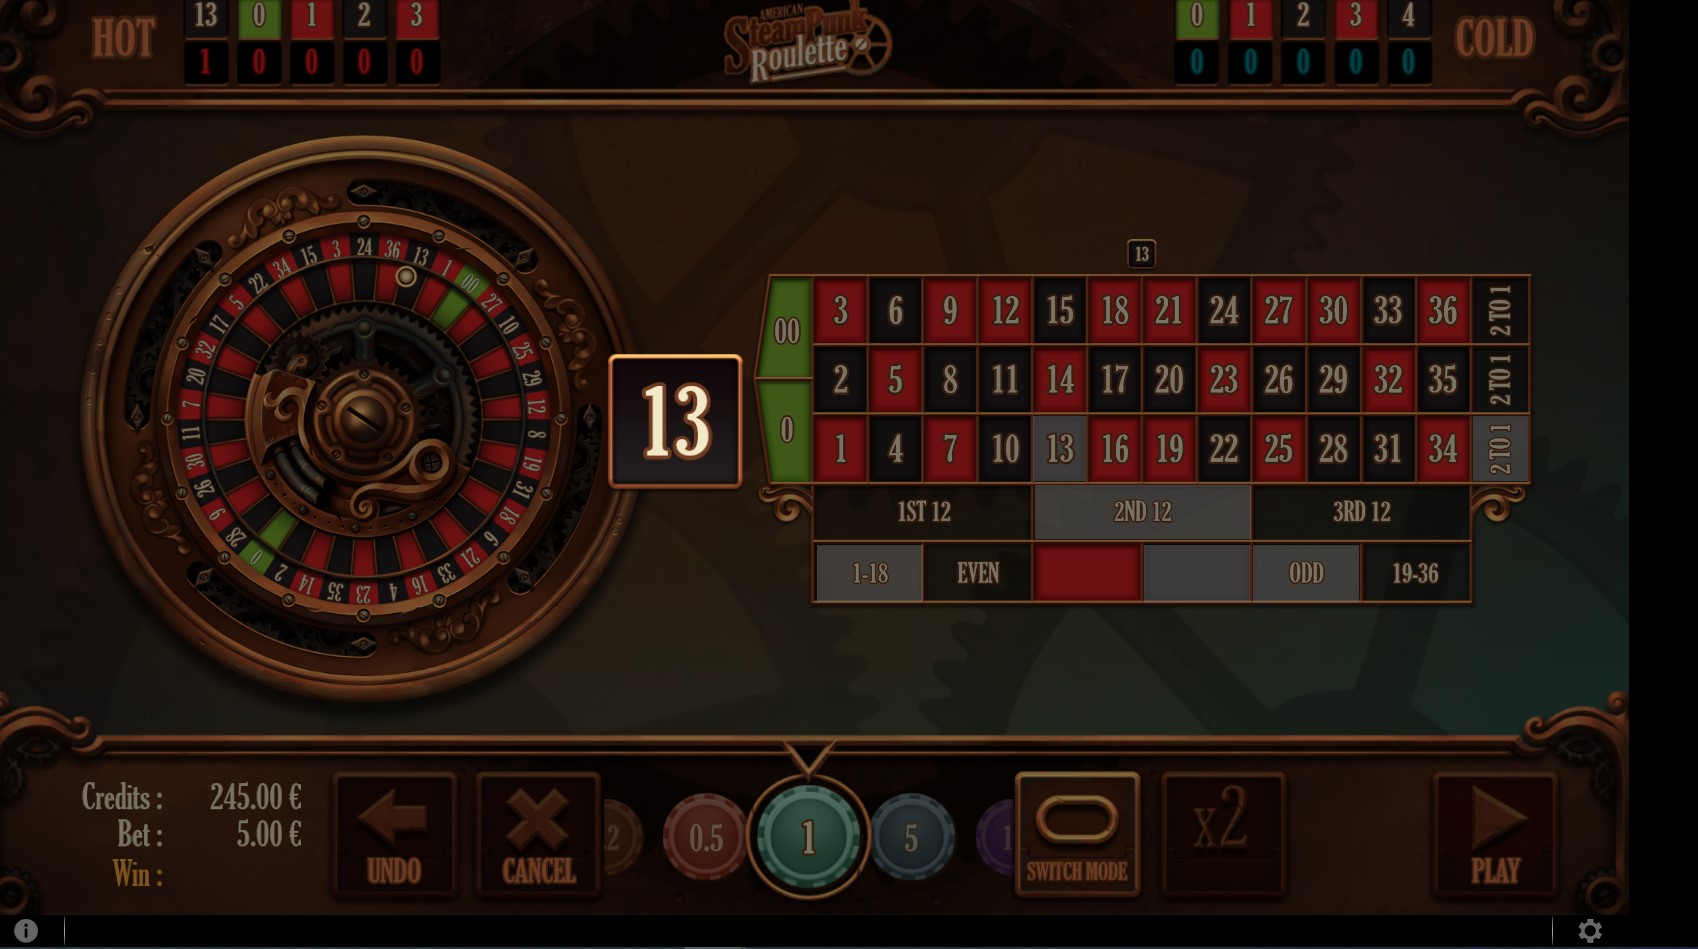 Panache Casino Mobile Casino Games Review